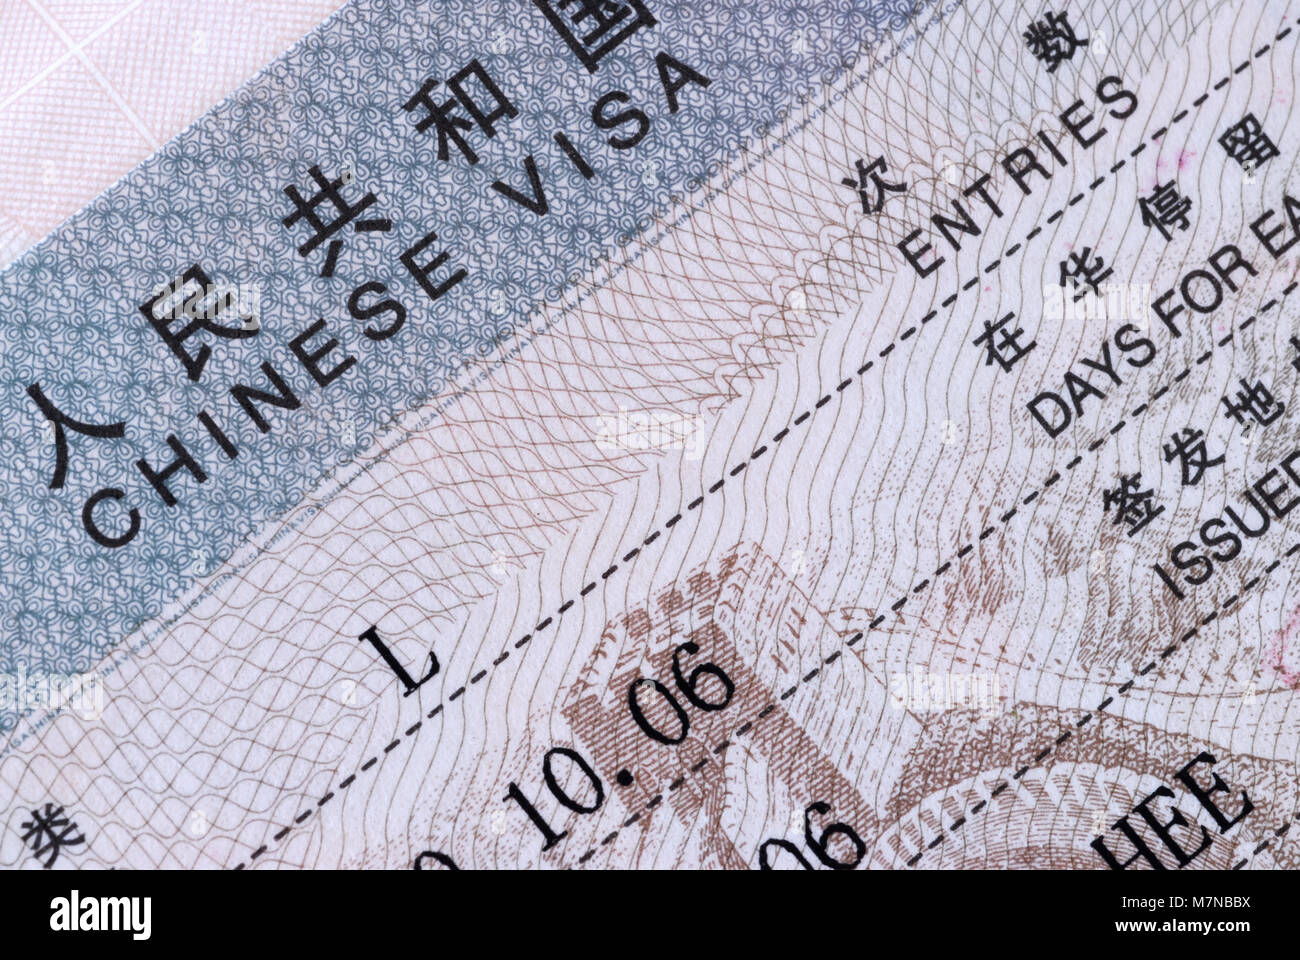 Makro Ansicht eines Teils der Ein chinesisches Visum Dokument auf der inneren Seite des Reisepasses Stockfoto